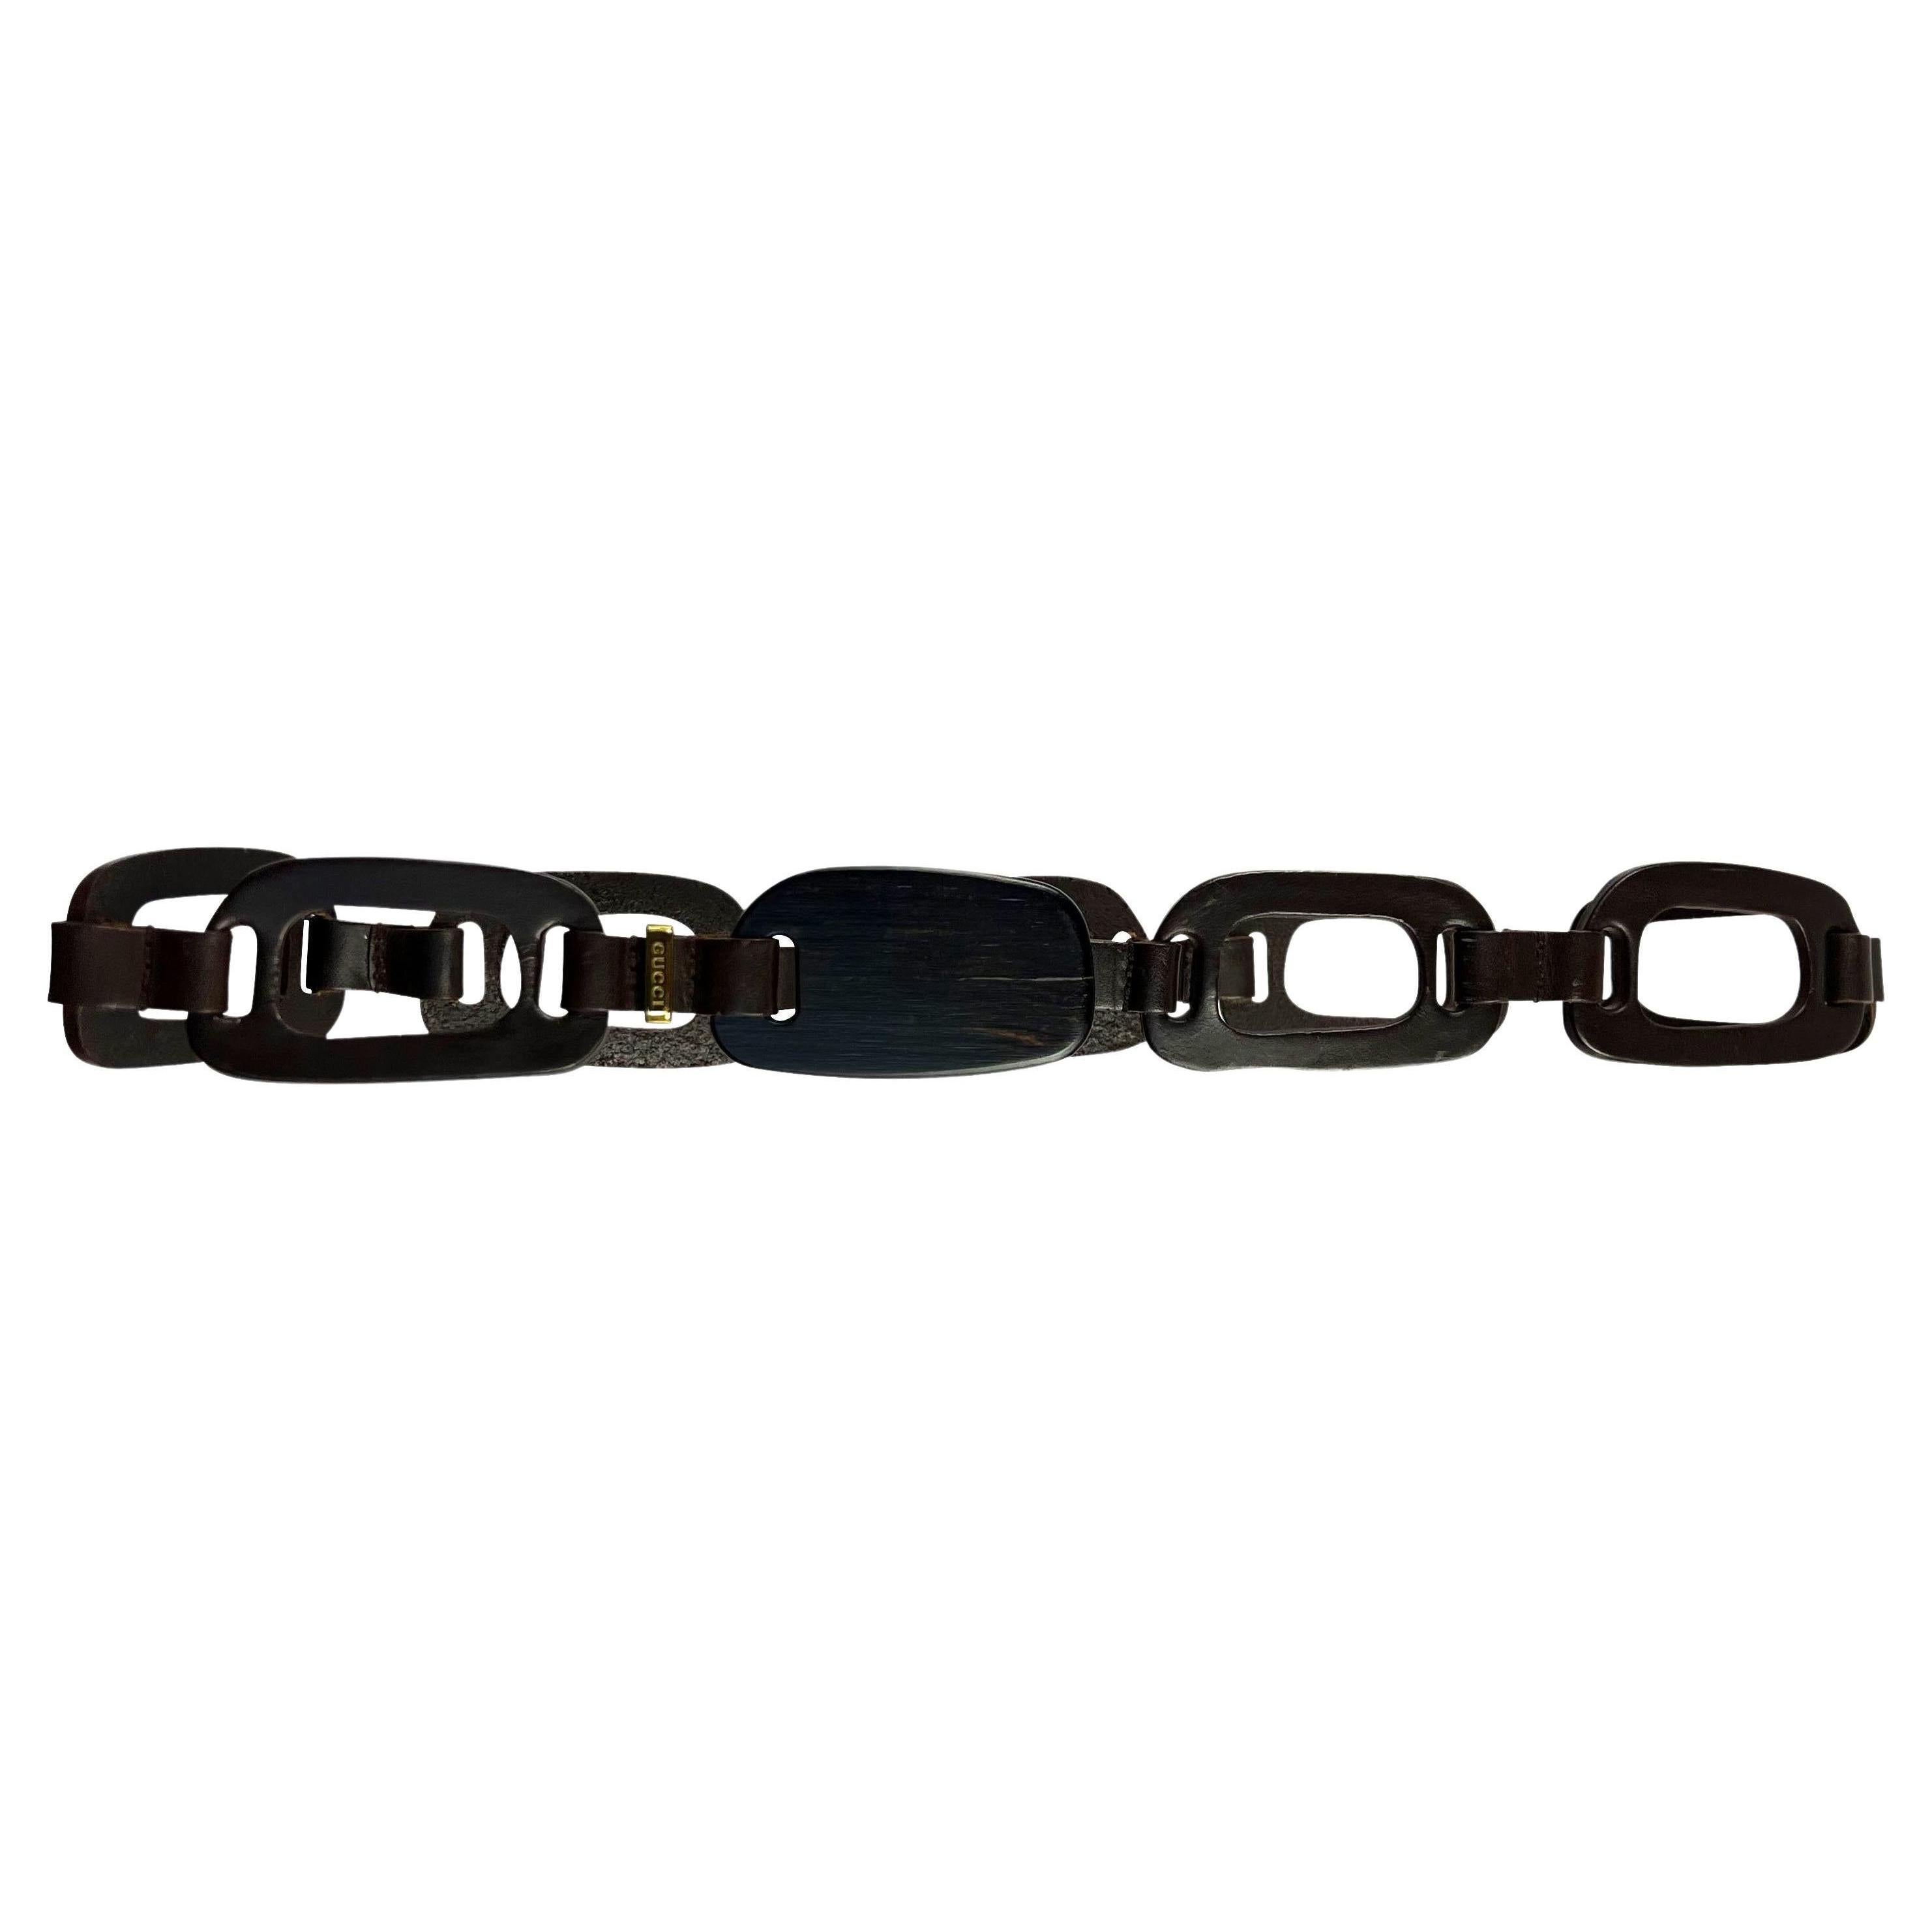 Voici une magnifique ceinture Gucci en cuir marron et bois, dessinée par Tom Ford. Issue de la collection printemps-été 1997, cette ceinture présente des anneaux découpés au laser reliés à des lanières de cuir et complétés par une boucle en bois.